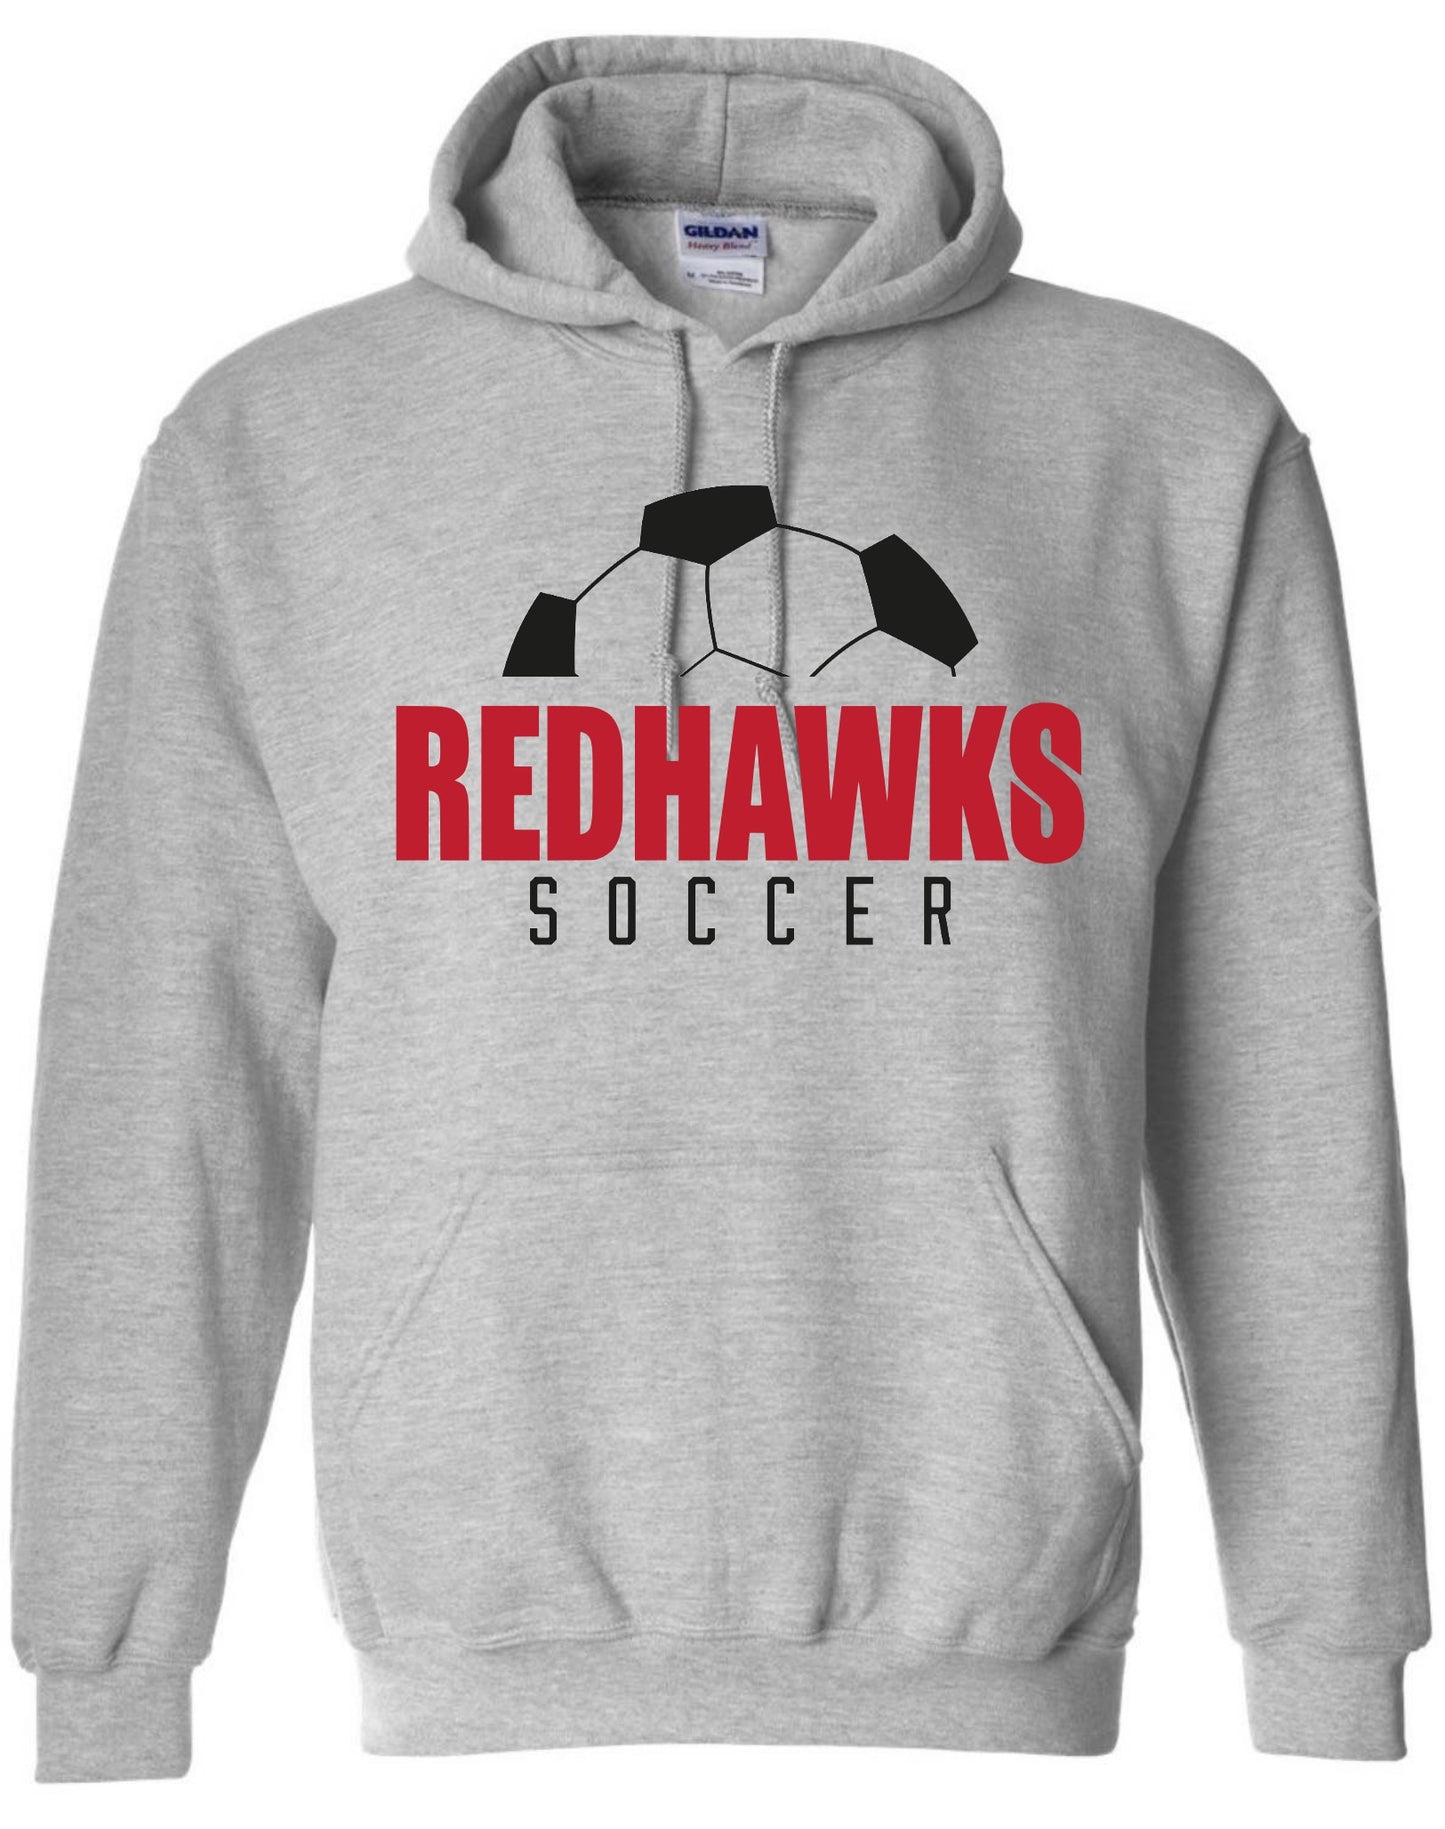 Redhawks Soccer Hoodie